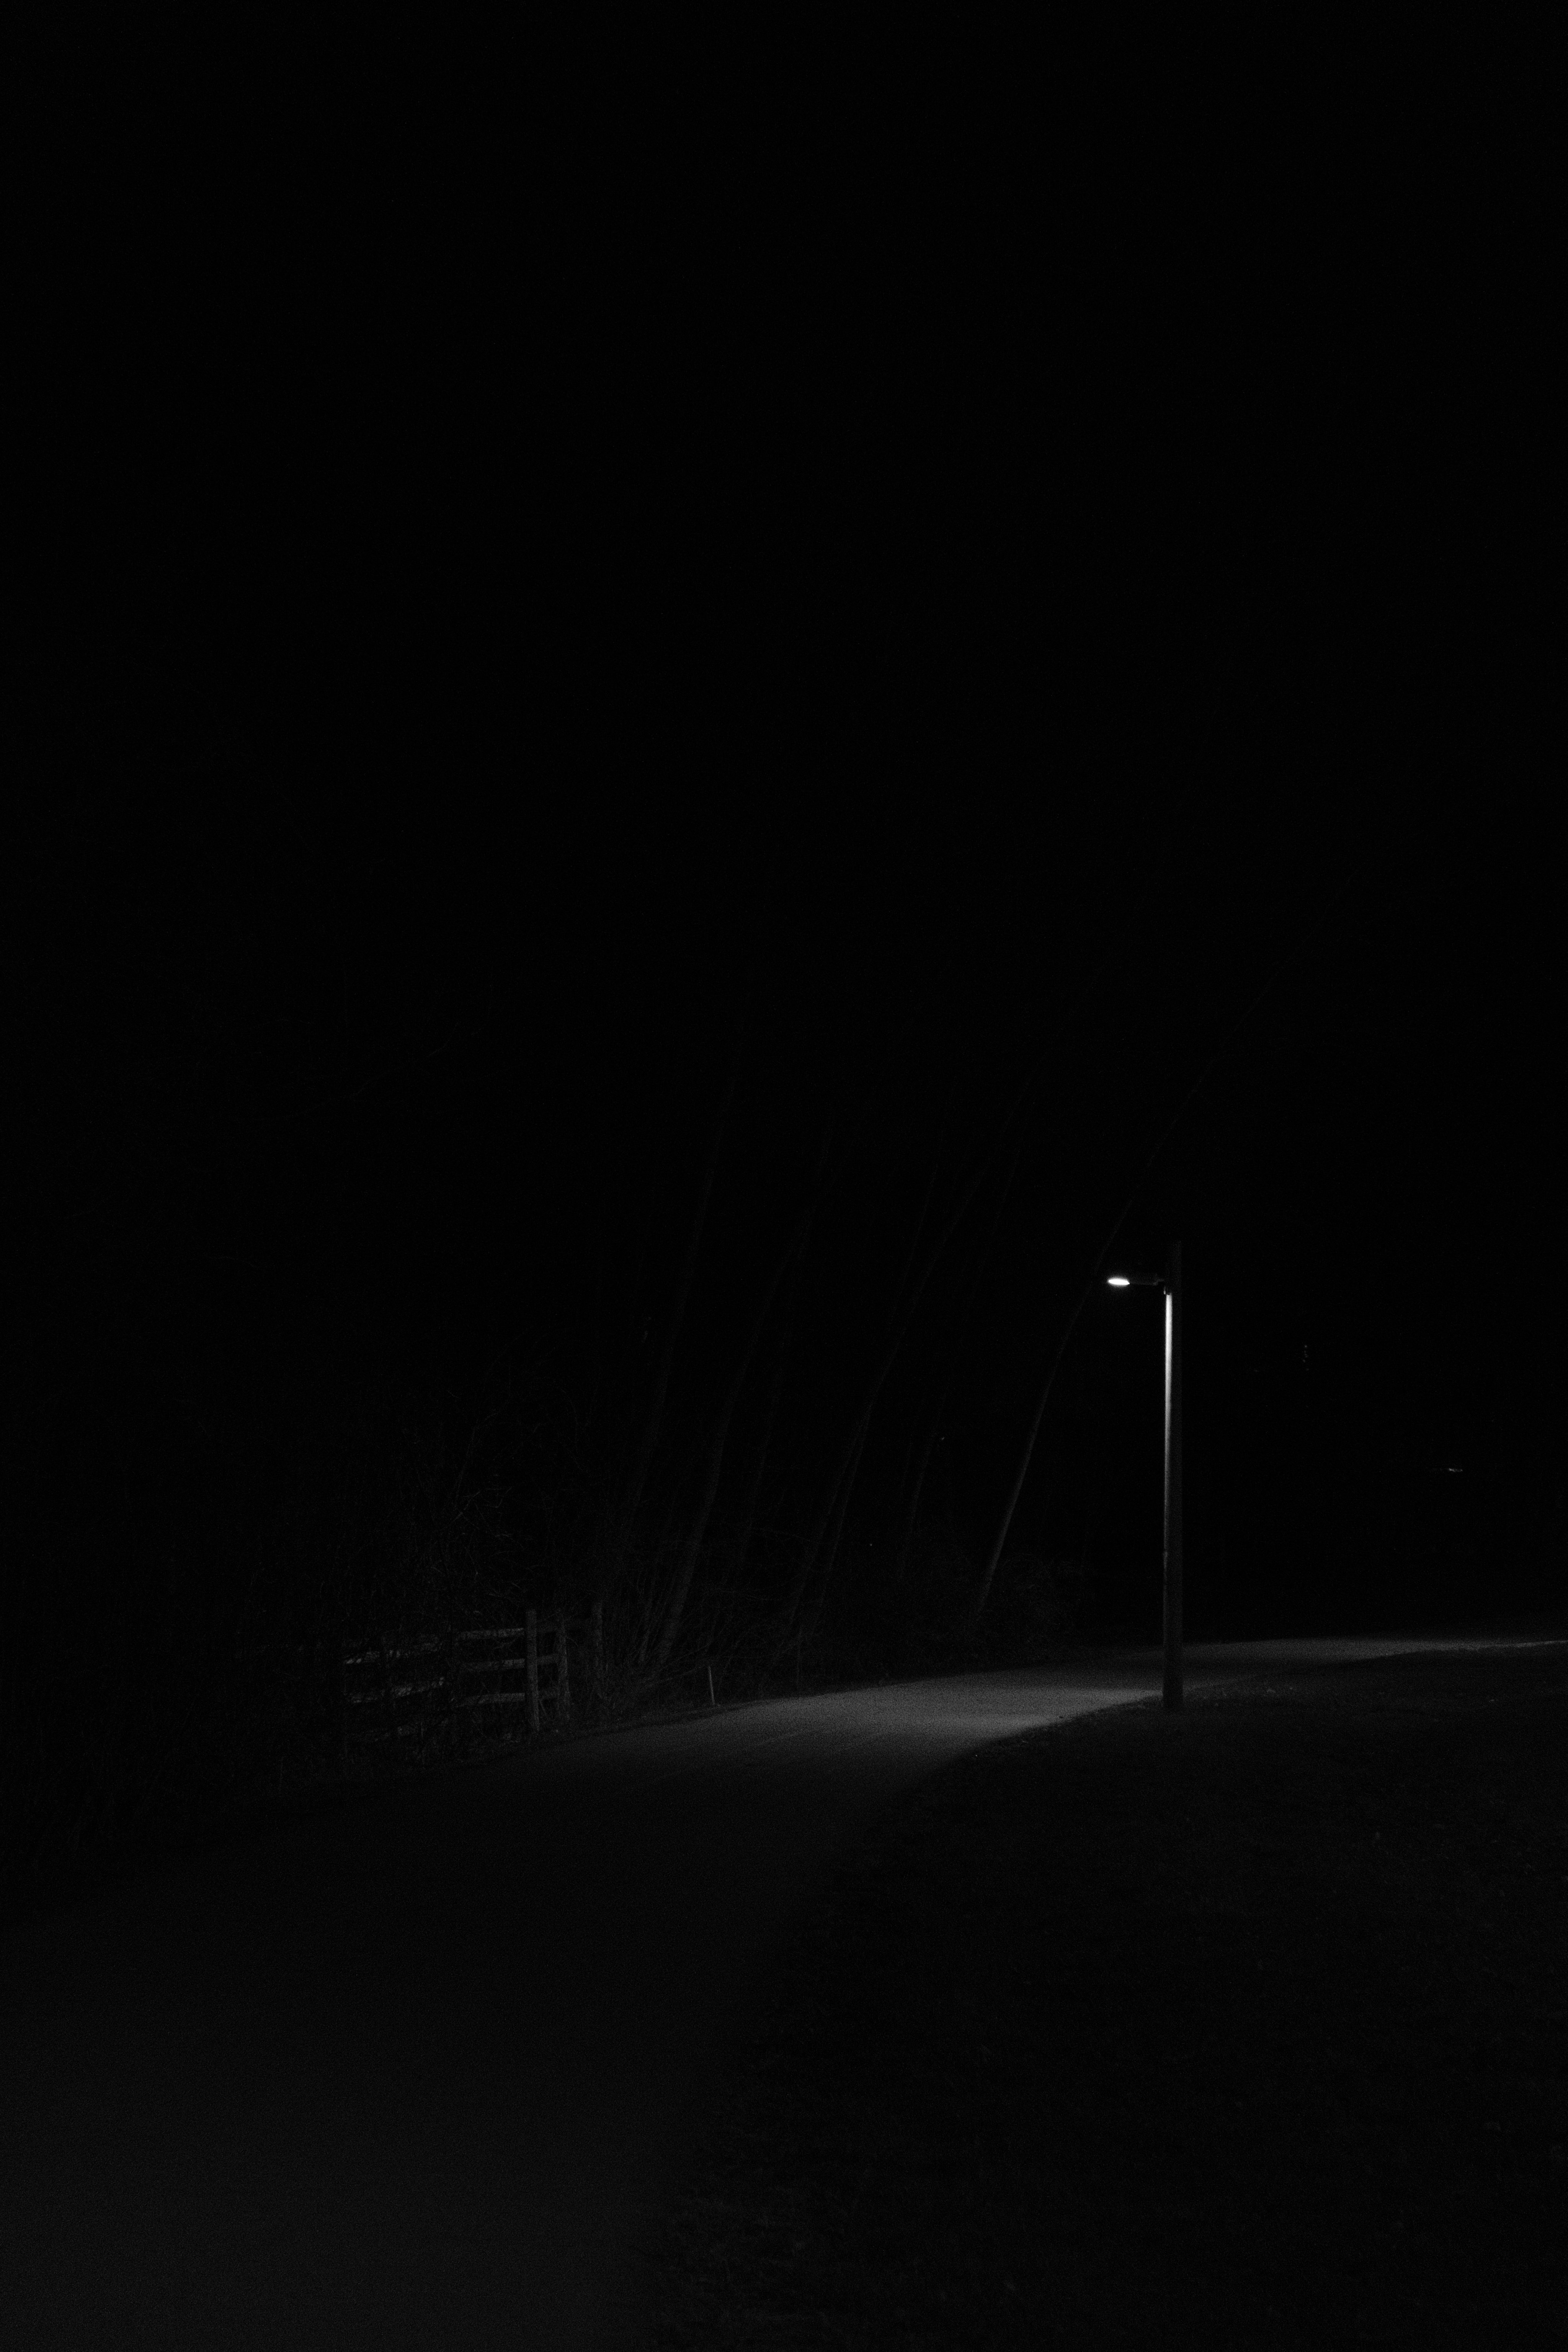 black, bw, glow, night, lantern, road, lamp, chb 1080p